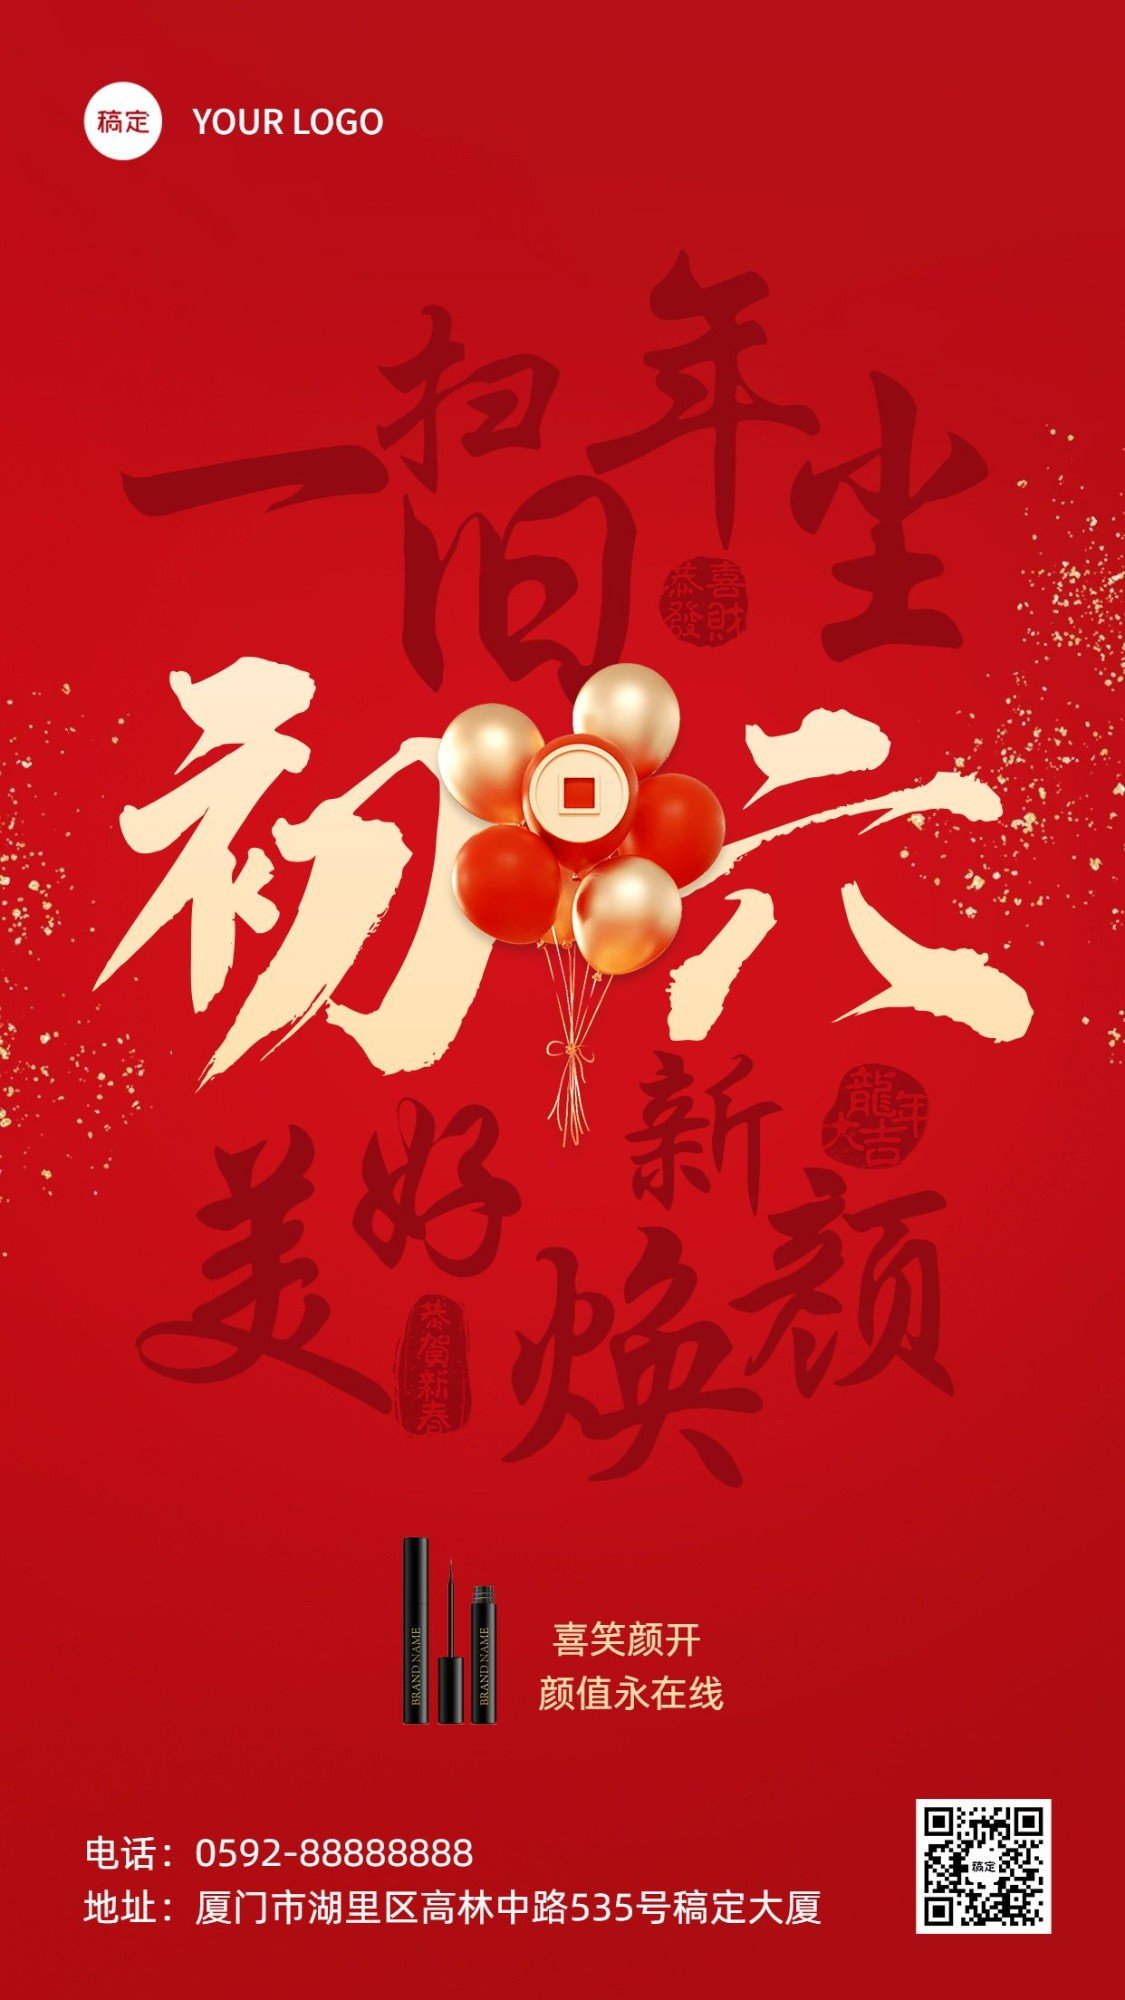 春节初六节日祝福产品展示手机海报套系预览效果